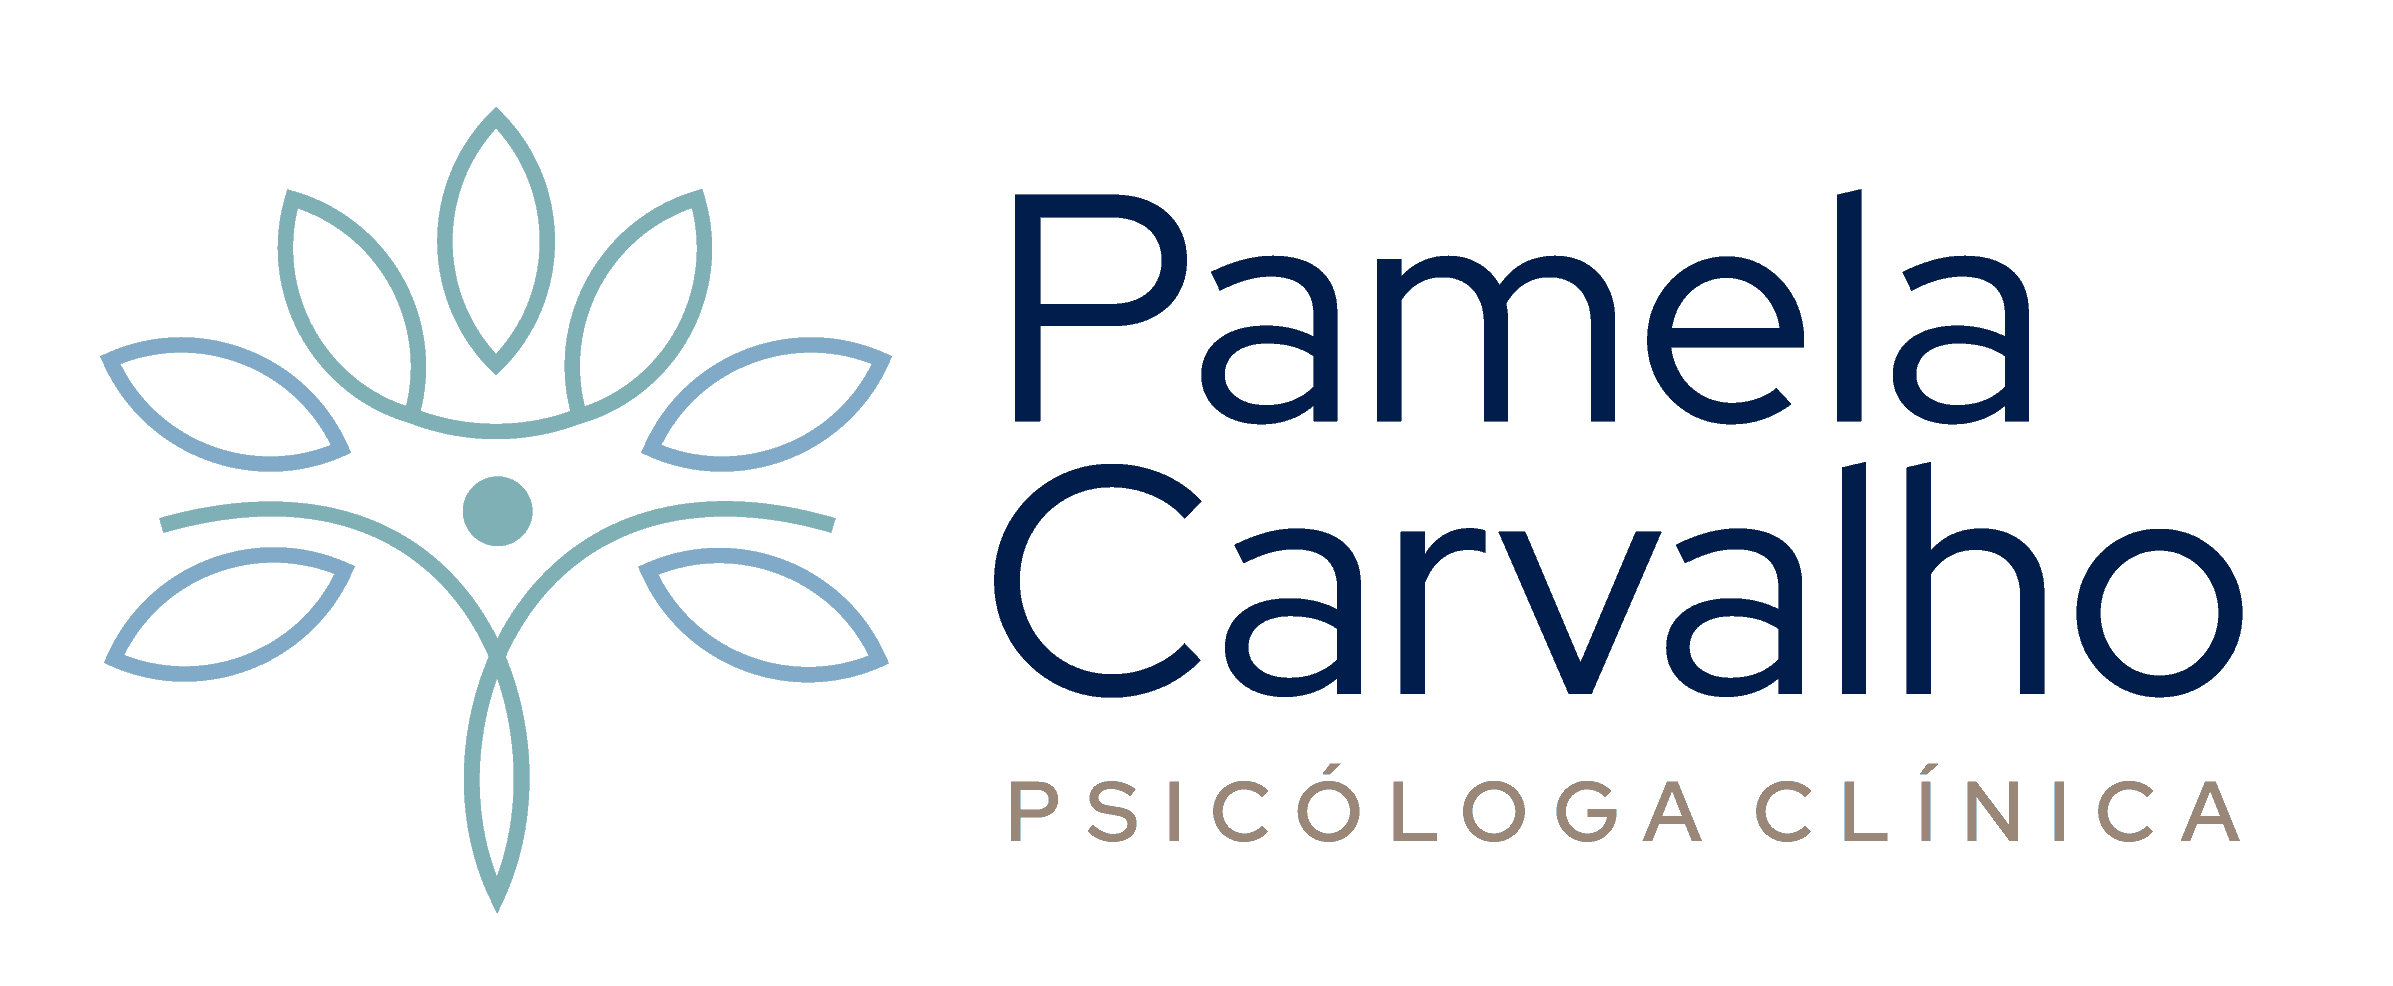 Pamela Carvalho Psicóloga Clínica · Psicoterapia Online